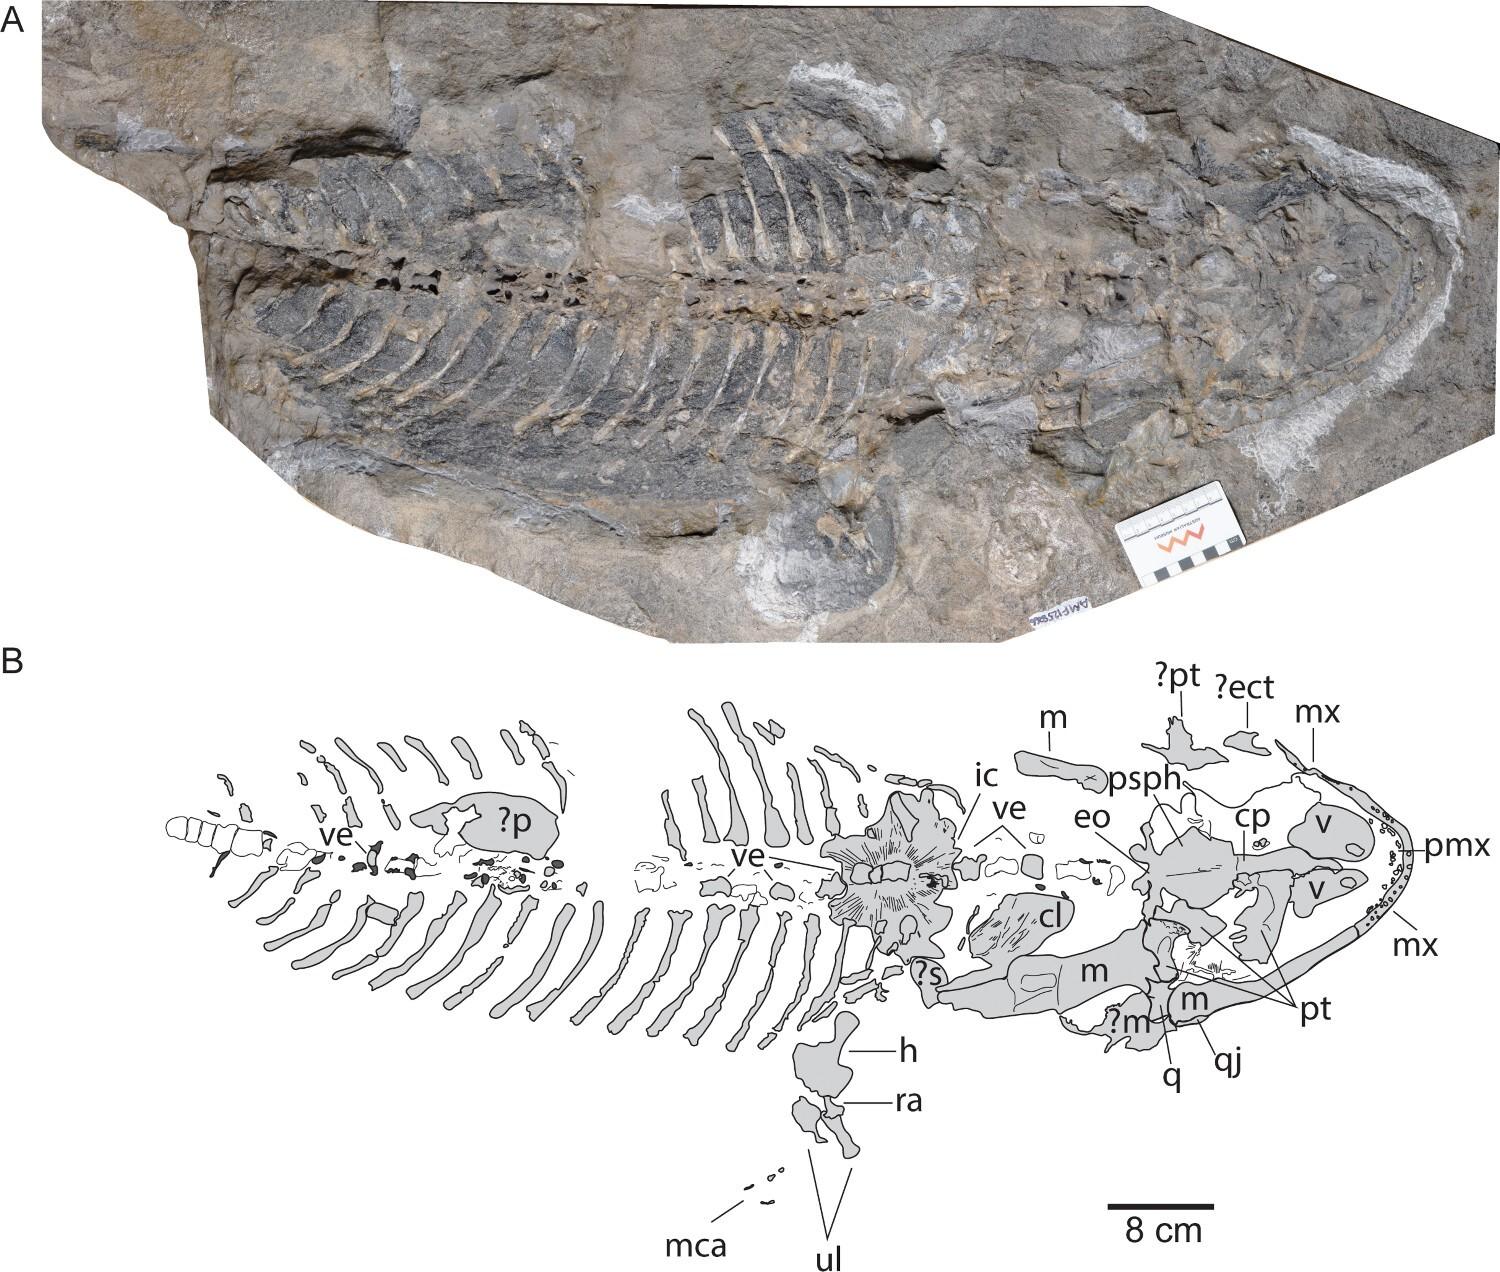 Arenaerpeton supinatus, AM F125866, squelette articulé. A, plein fossile en vue ventrale ; B, interprétation schématique.